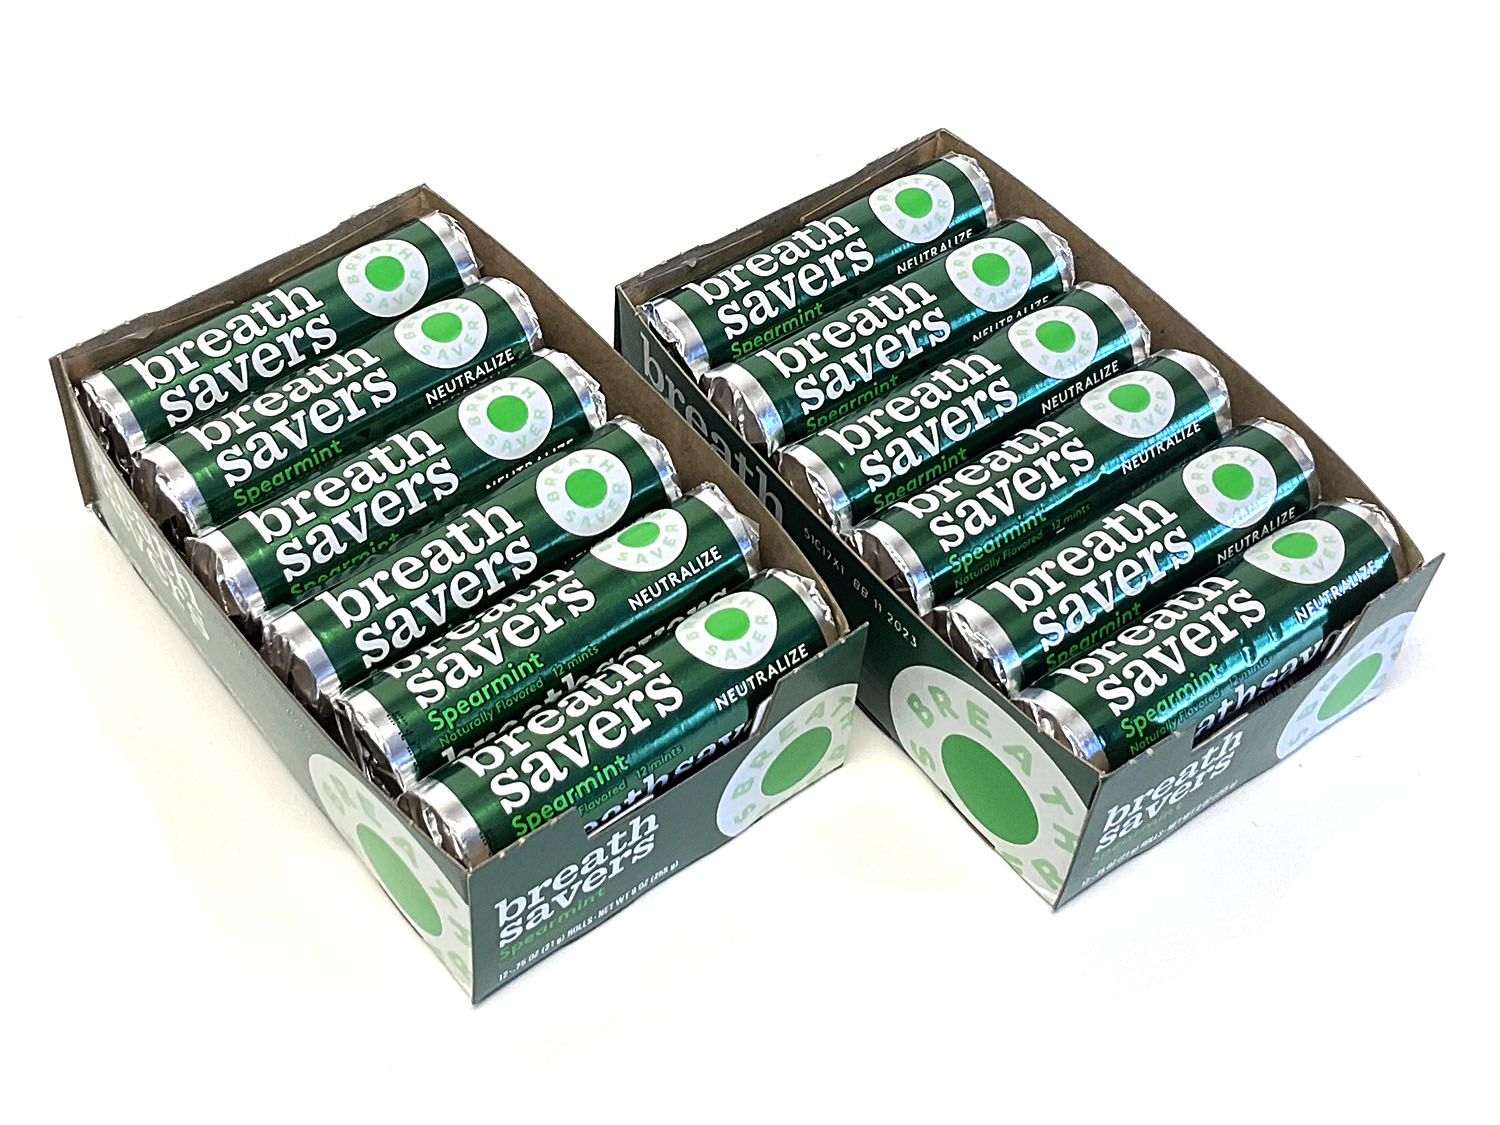 Breath Savers S/F Mints - Spearmint 0.75 oz Roll - Box of 24